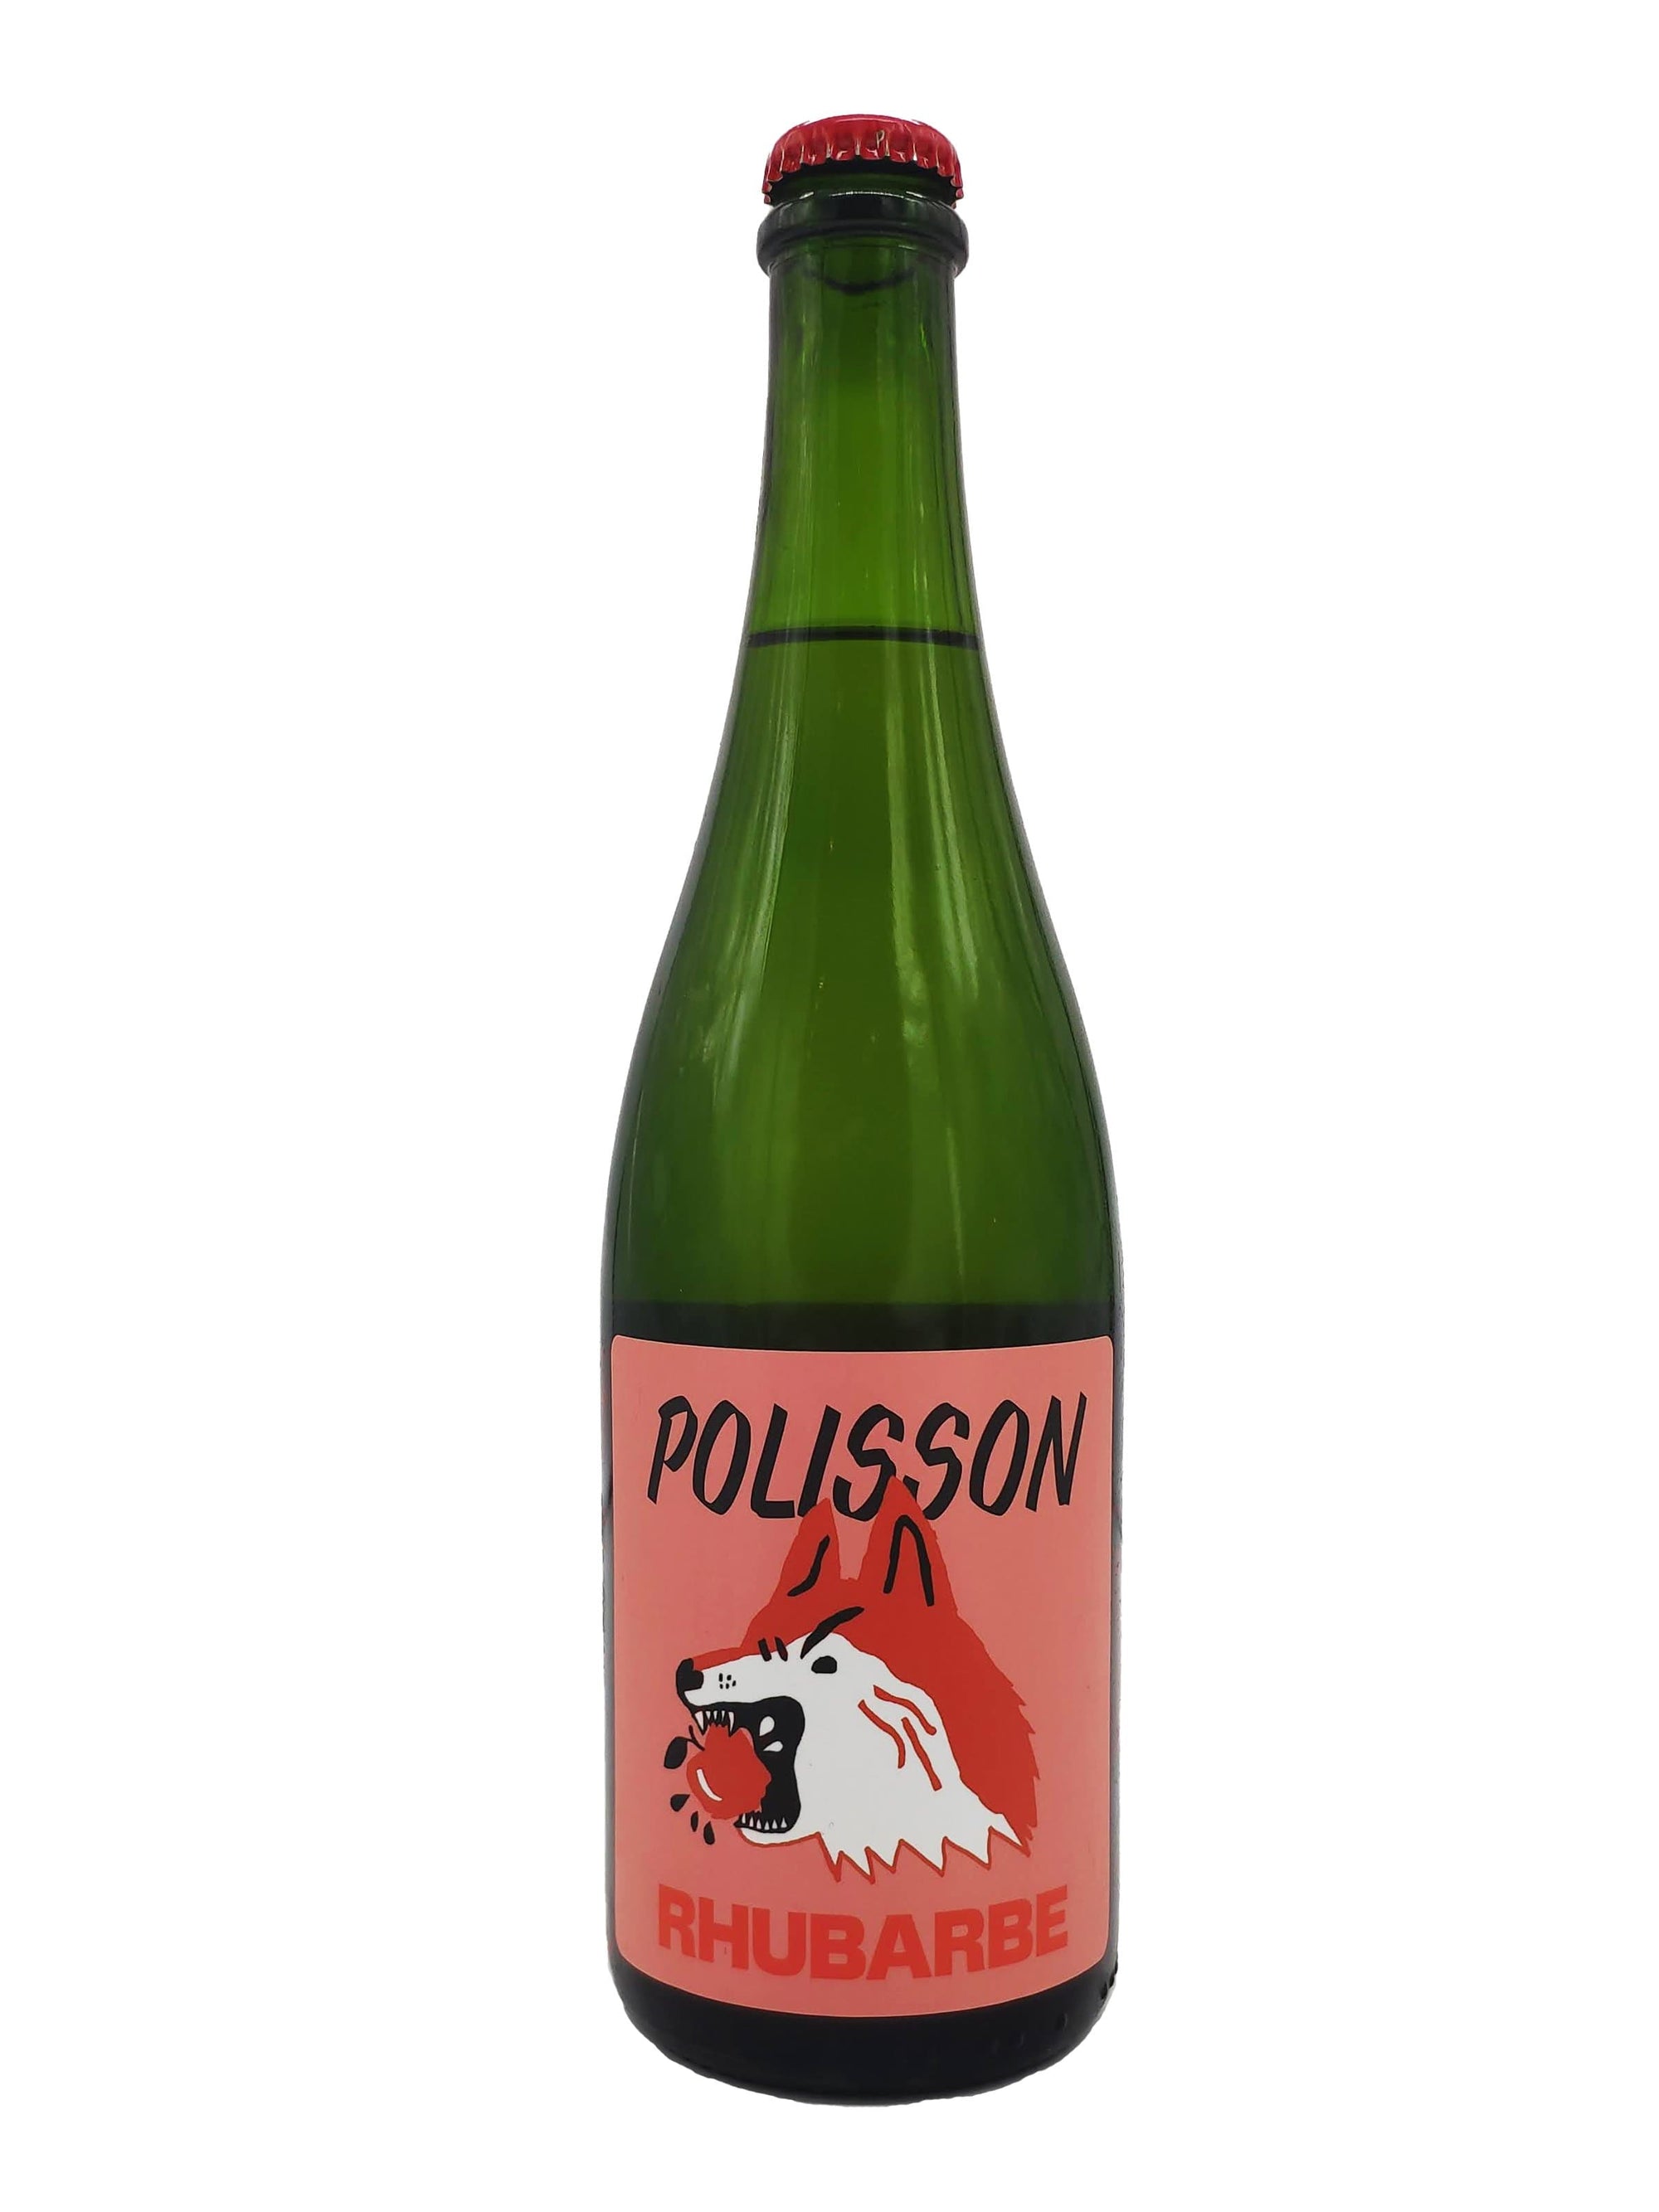 Rhubarbe - Cidre mousseux des Cidres Polisson